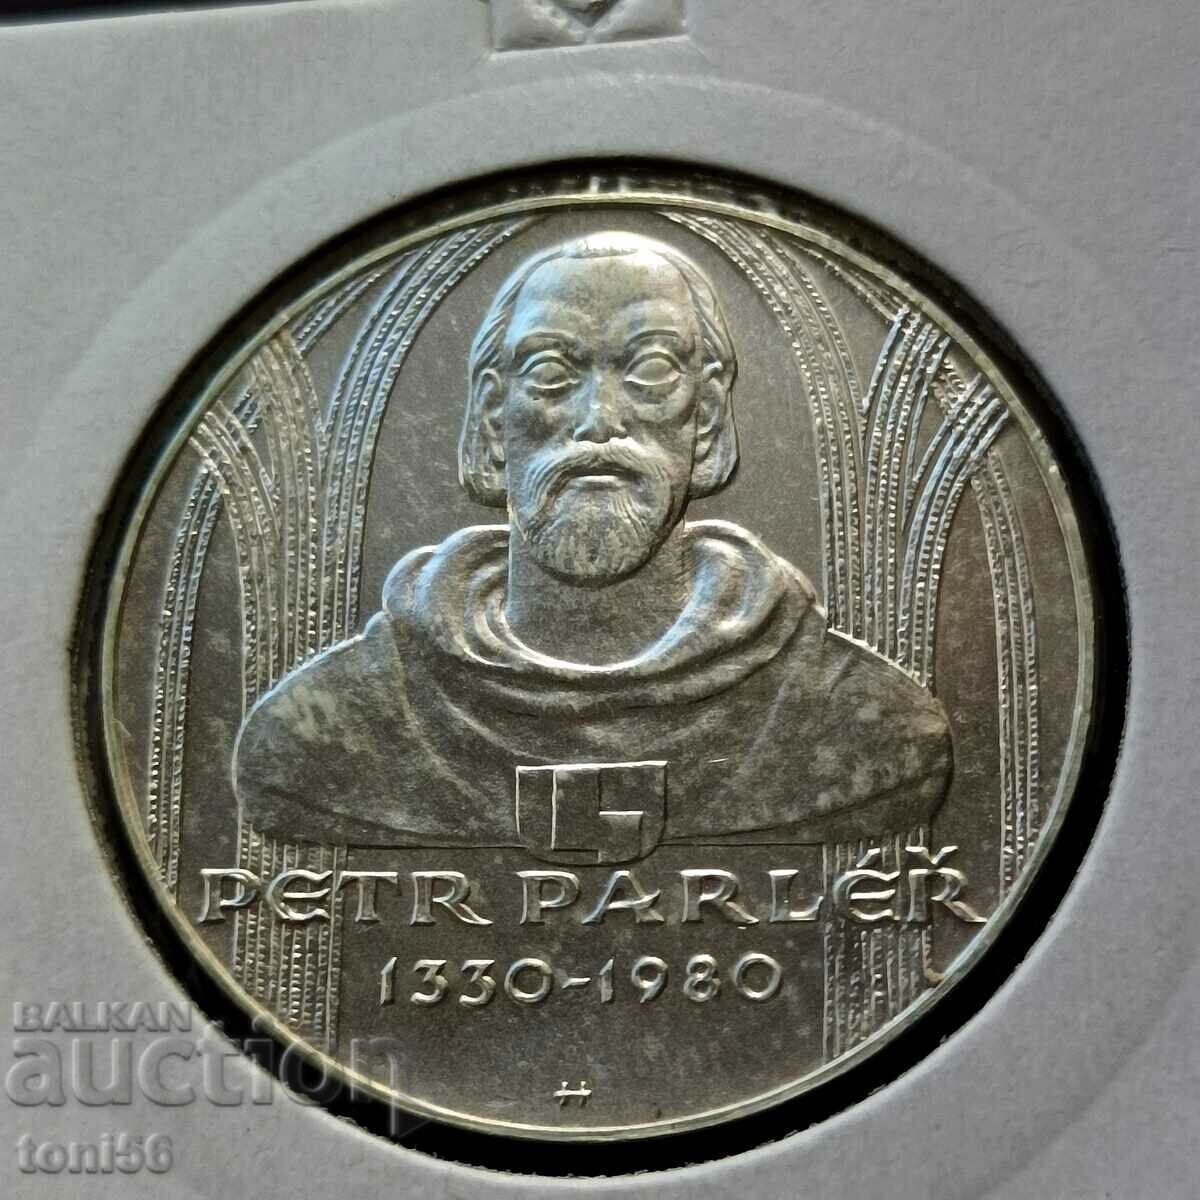 Czechoslovakia 100 kroner 1980 UNC - Silver